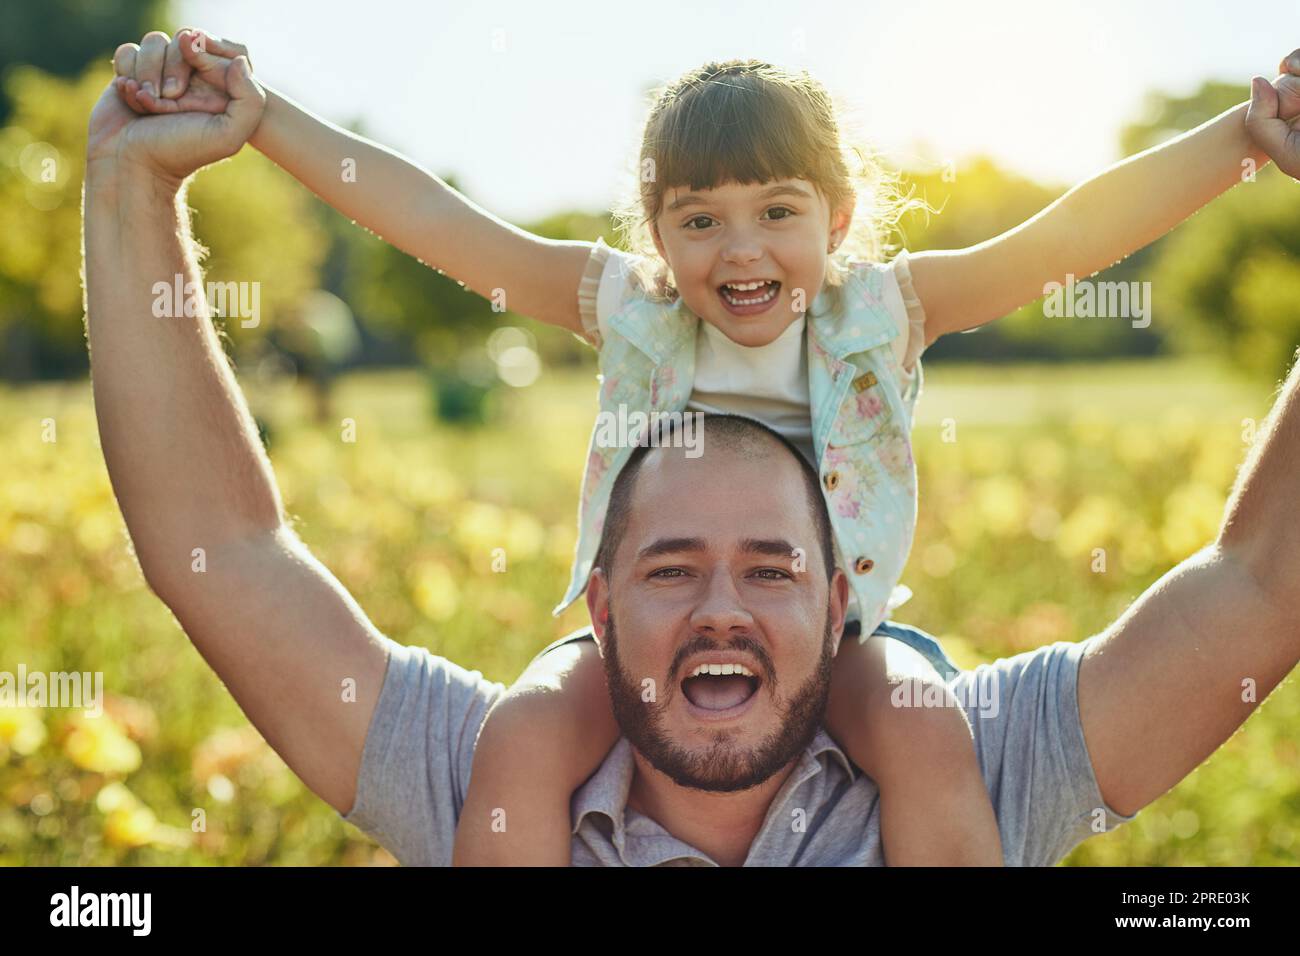 Als du bei der Elternschaft siegreiche. Ein entzückendes kleines Mädchen und ihr Vater spielen zusammen im Park. Stockfoto